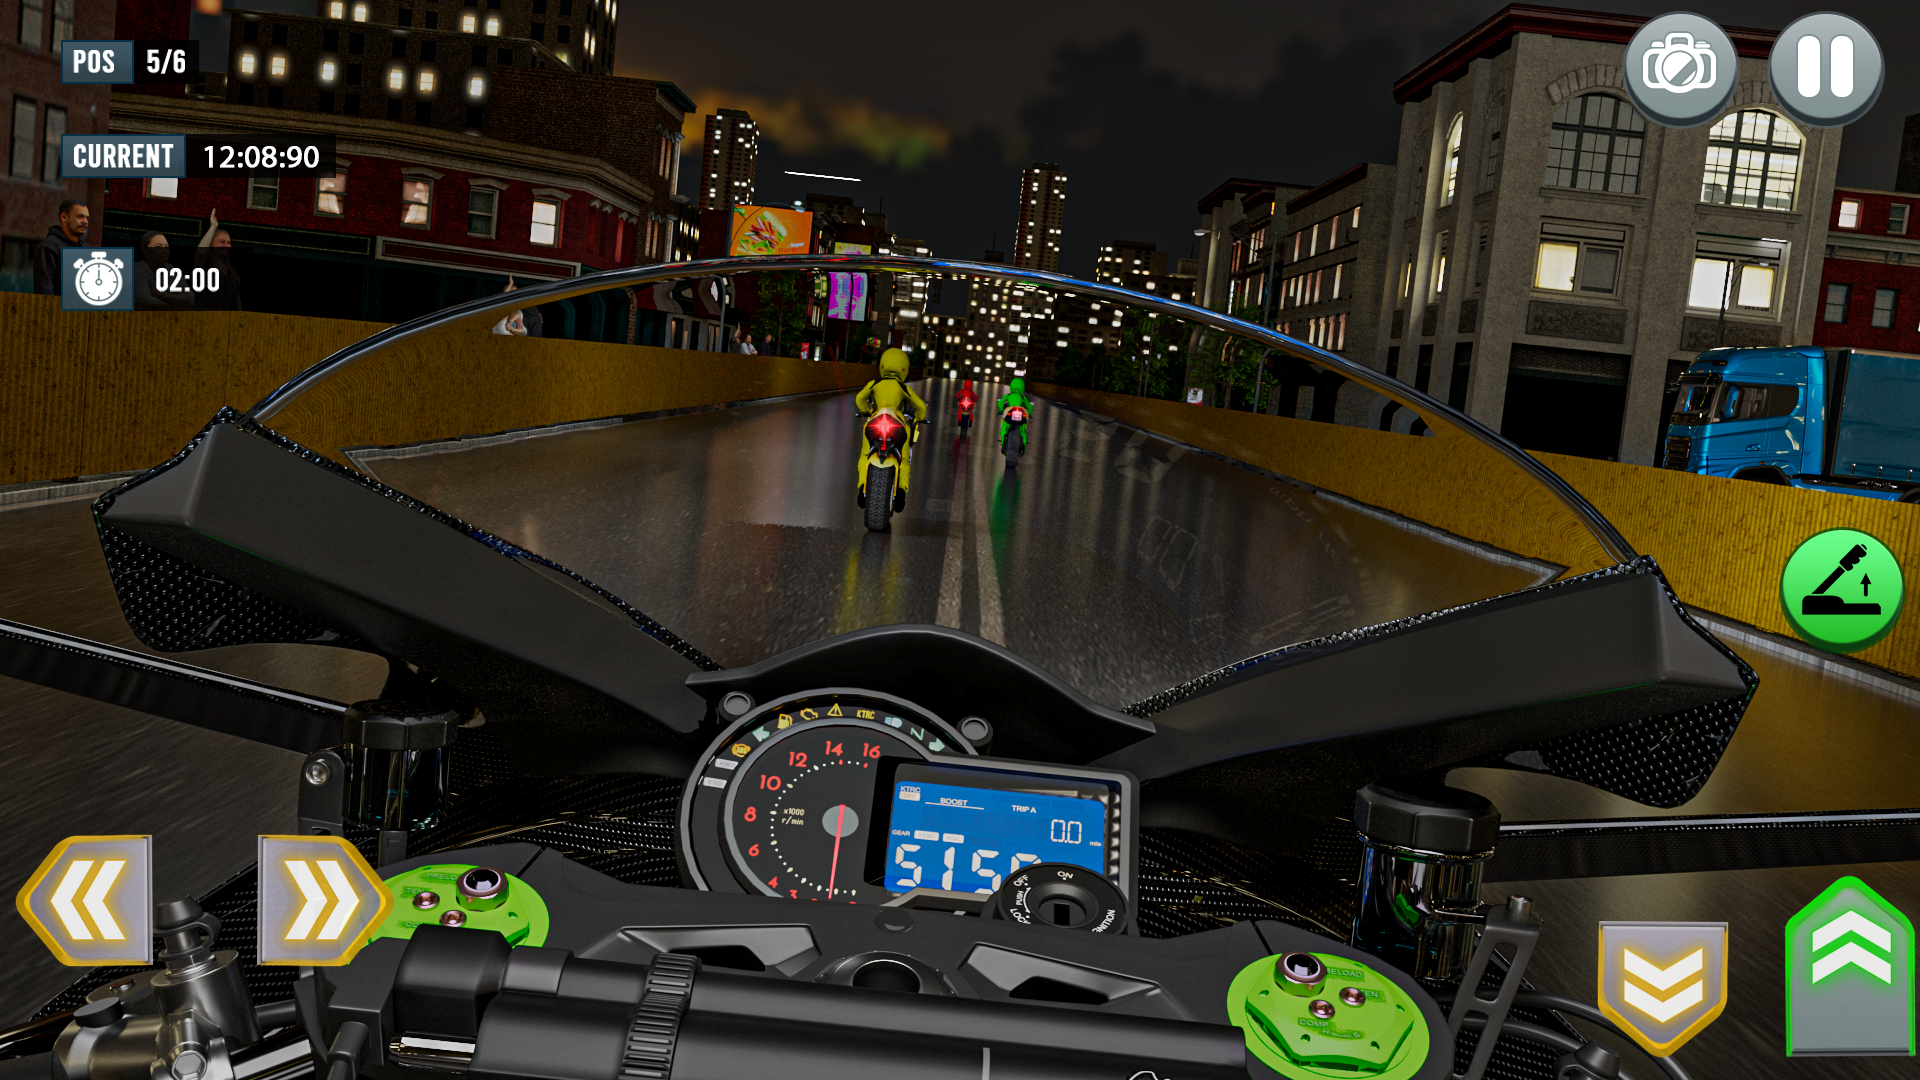 Screenshot of Real Bike Racing Games: Moto